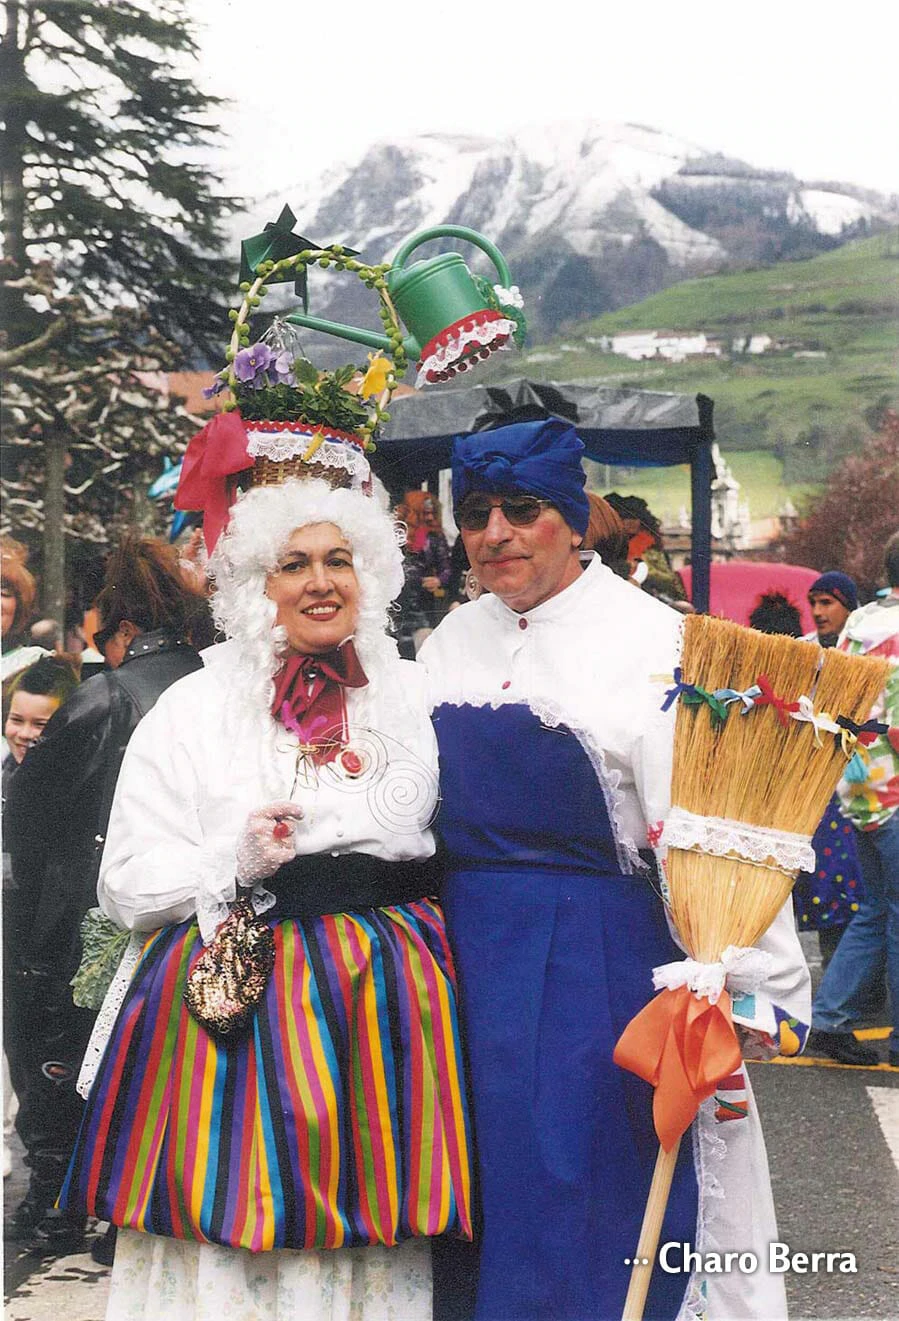 Charo Berra junto a su marido en el carnaval de Tolosa